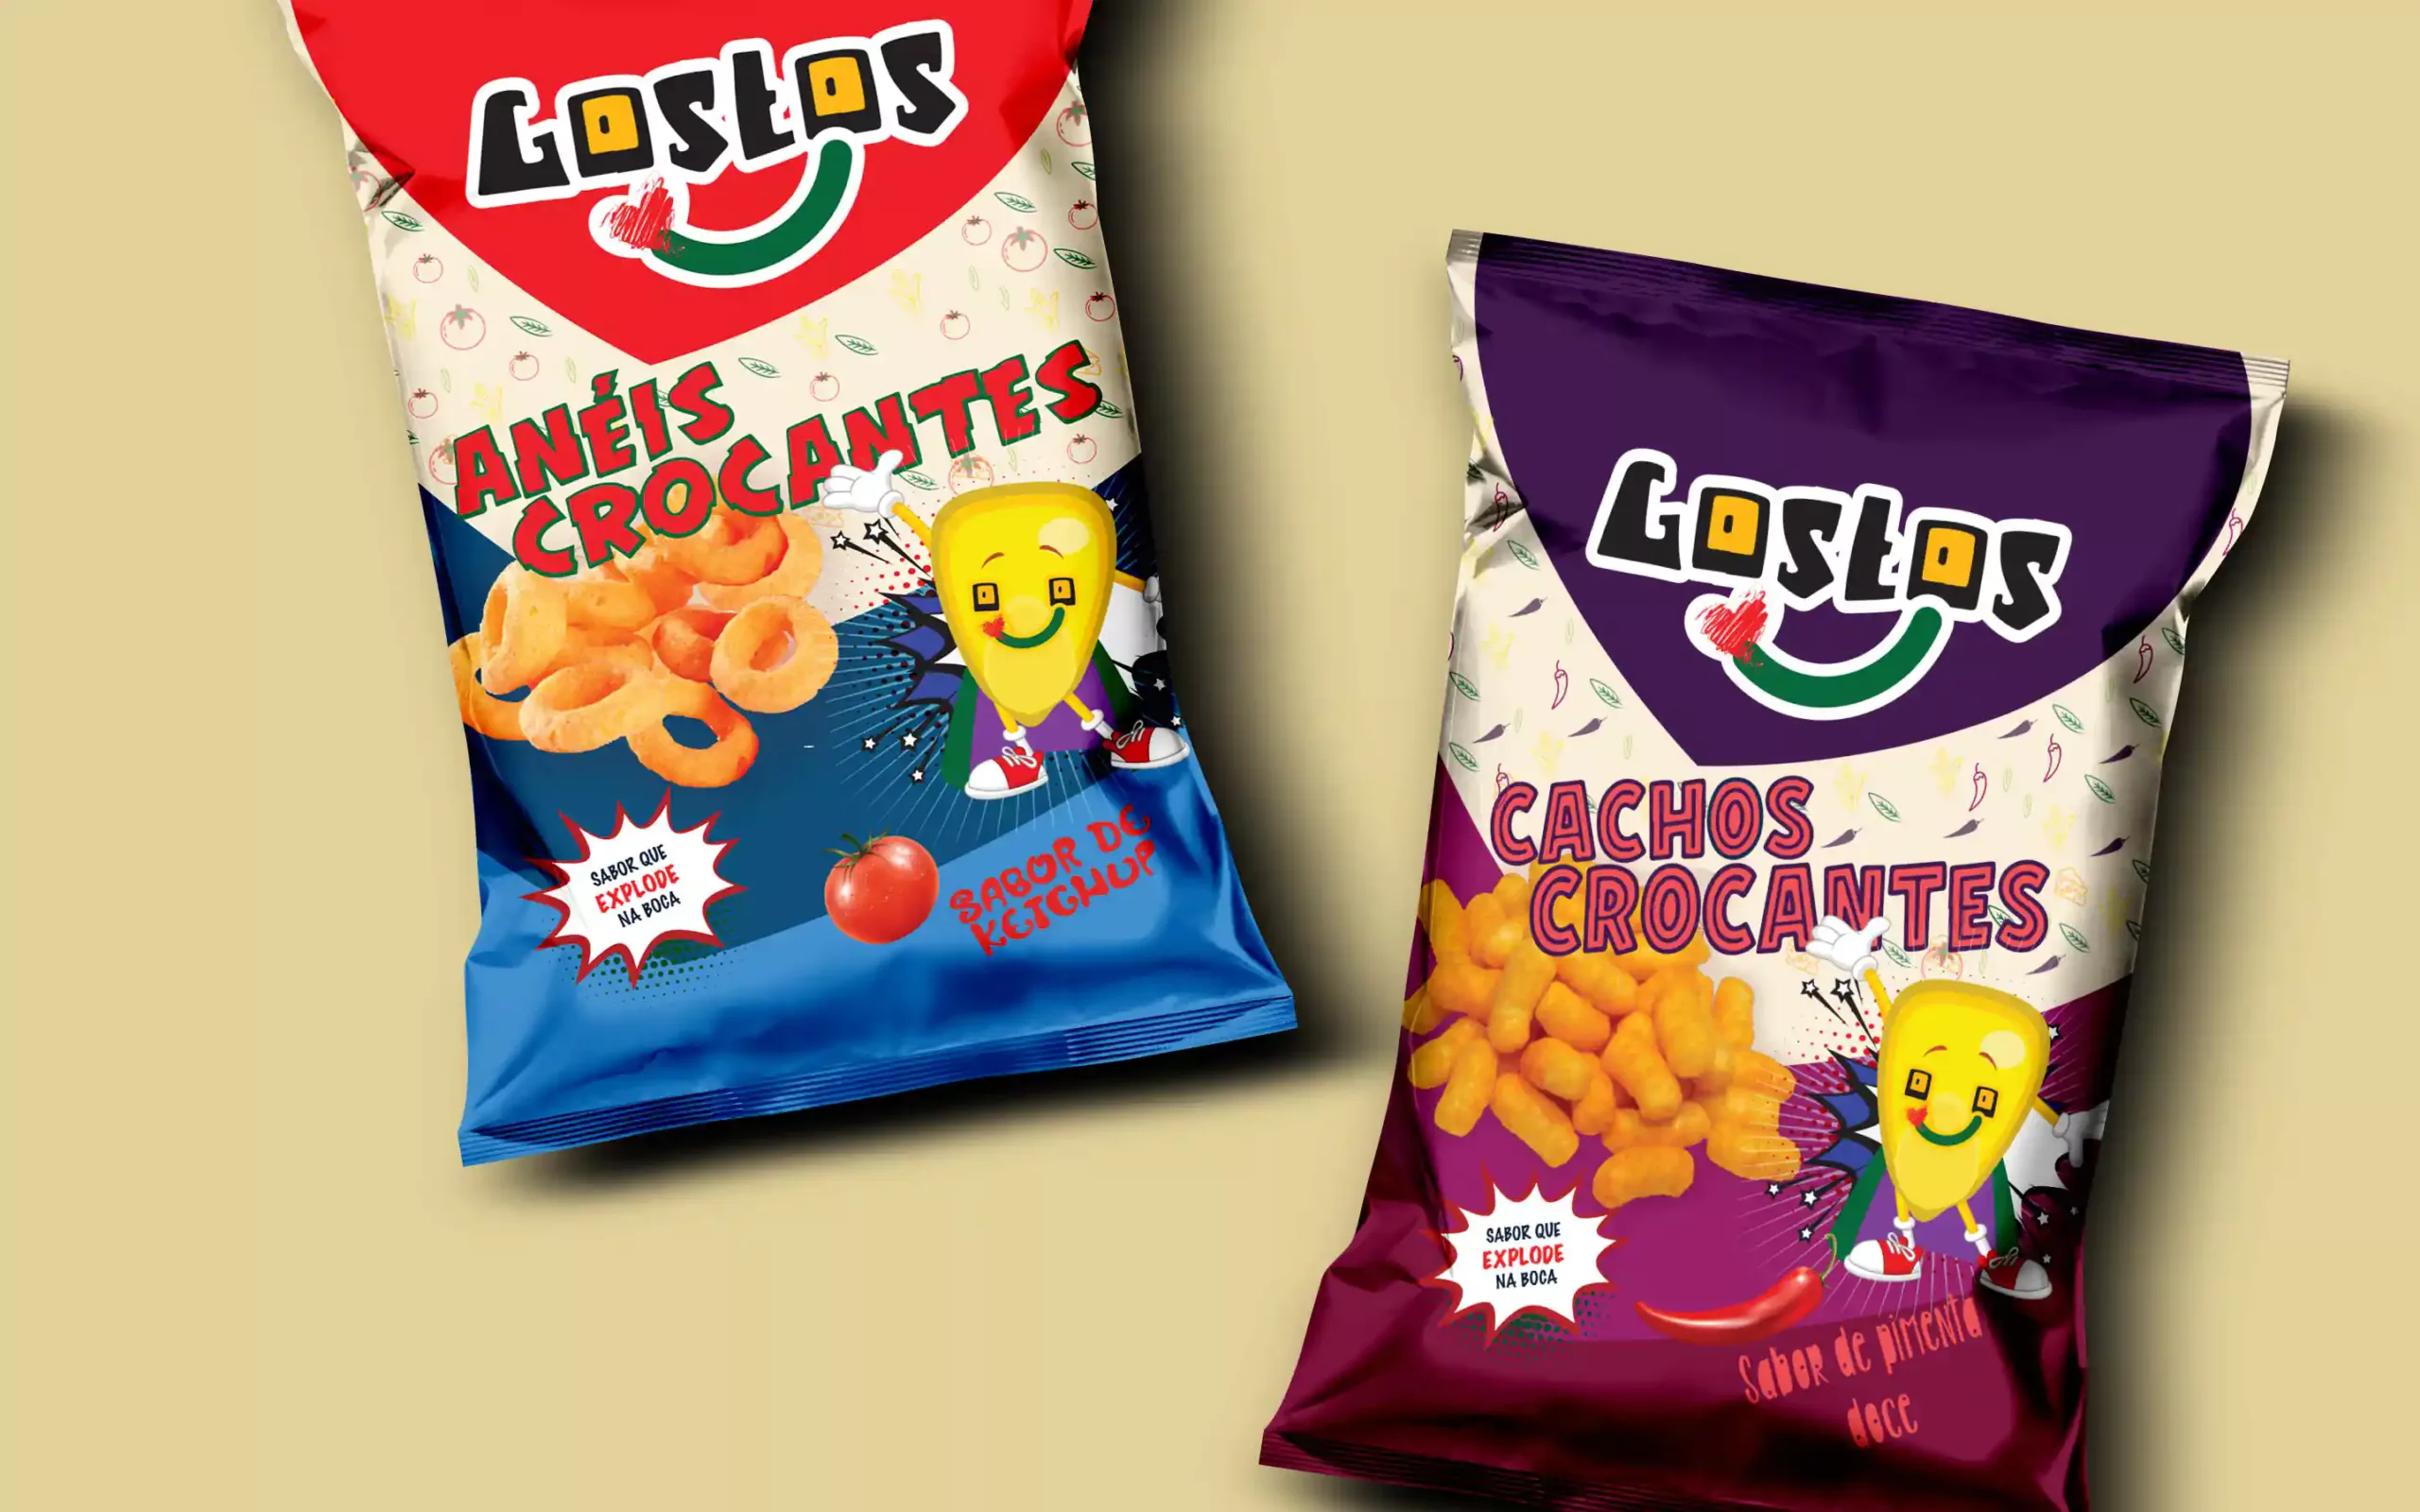 snack branding - cpg - packaging design